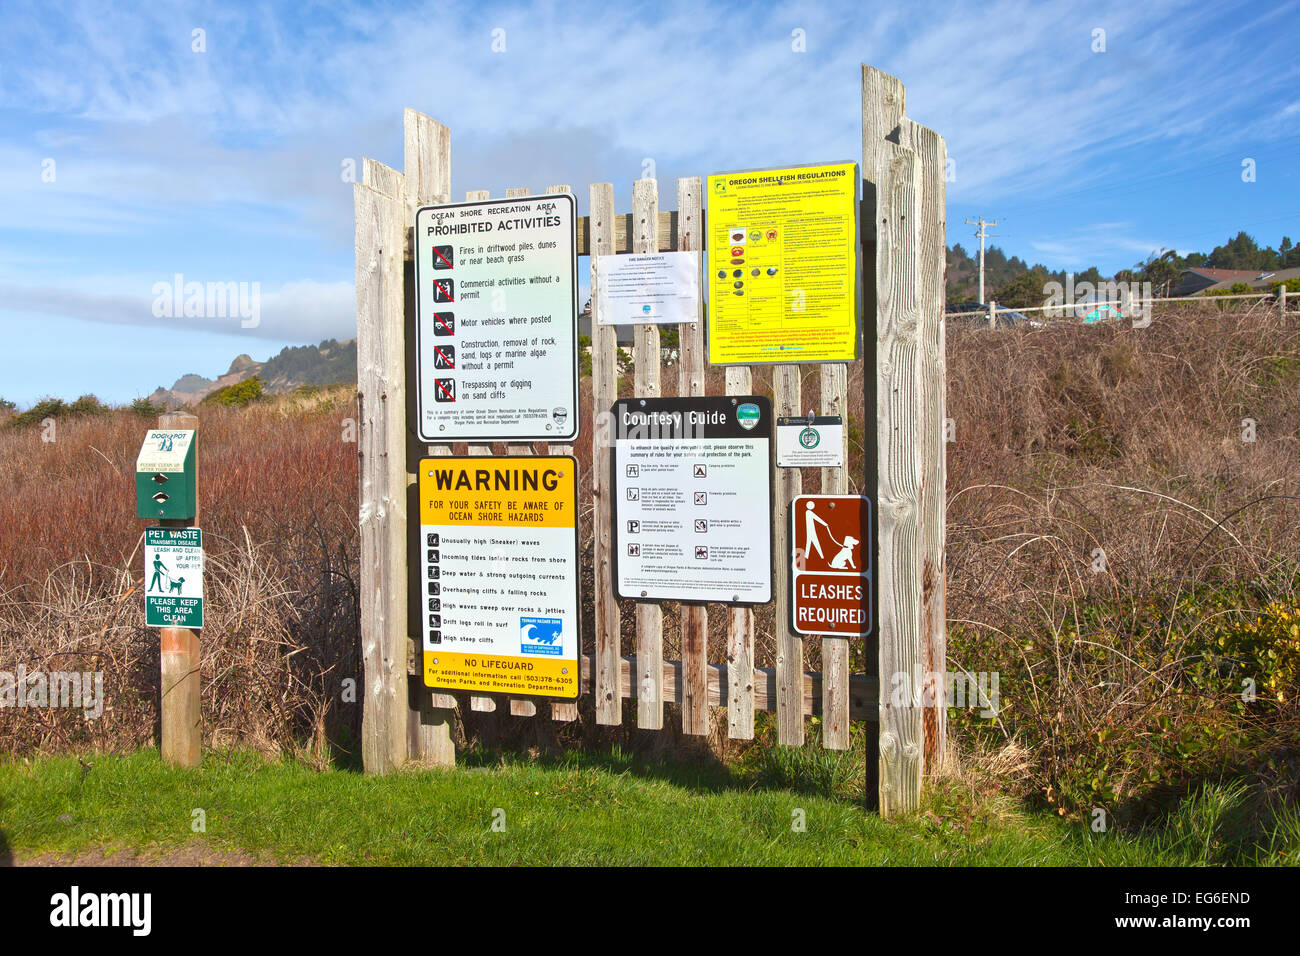 Wegweiser herrscht Erinnerungen und öffentliche Warnung an der Küste von Oregon Strand. Stockfoto